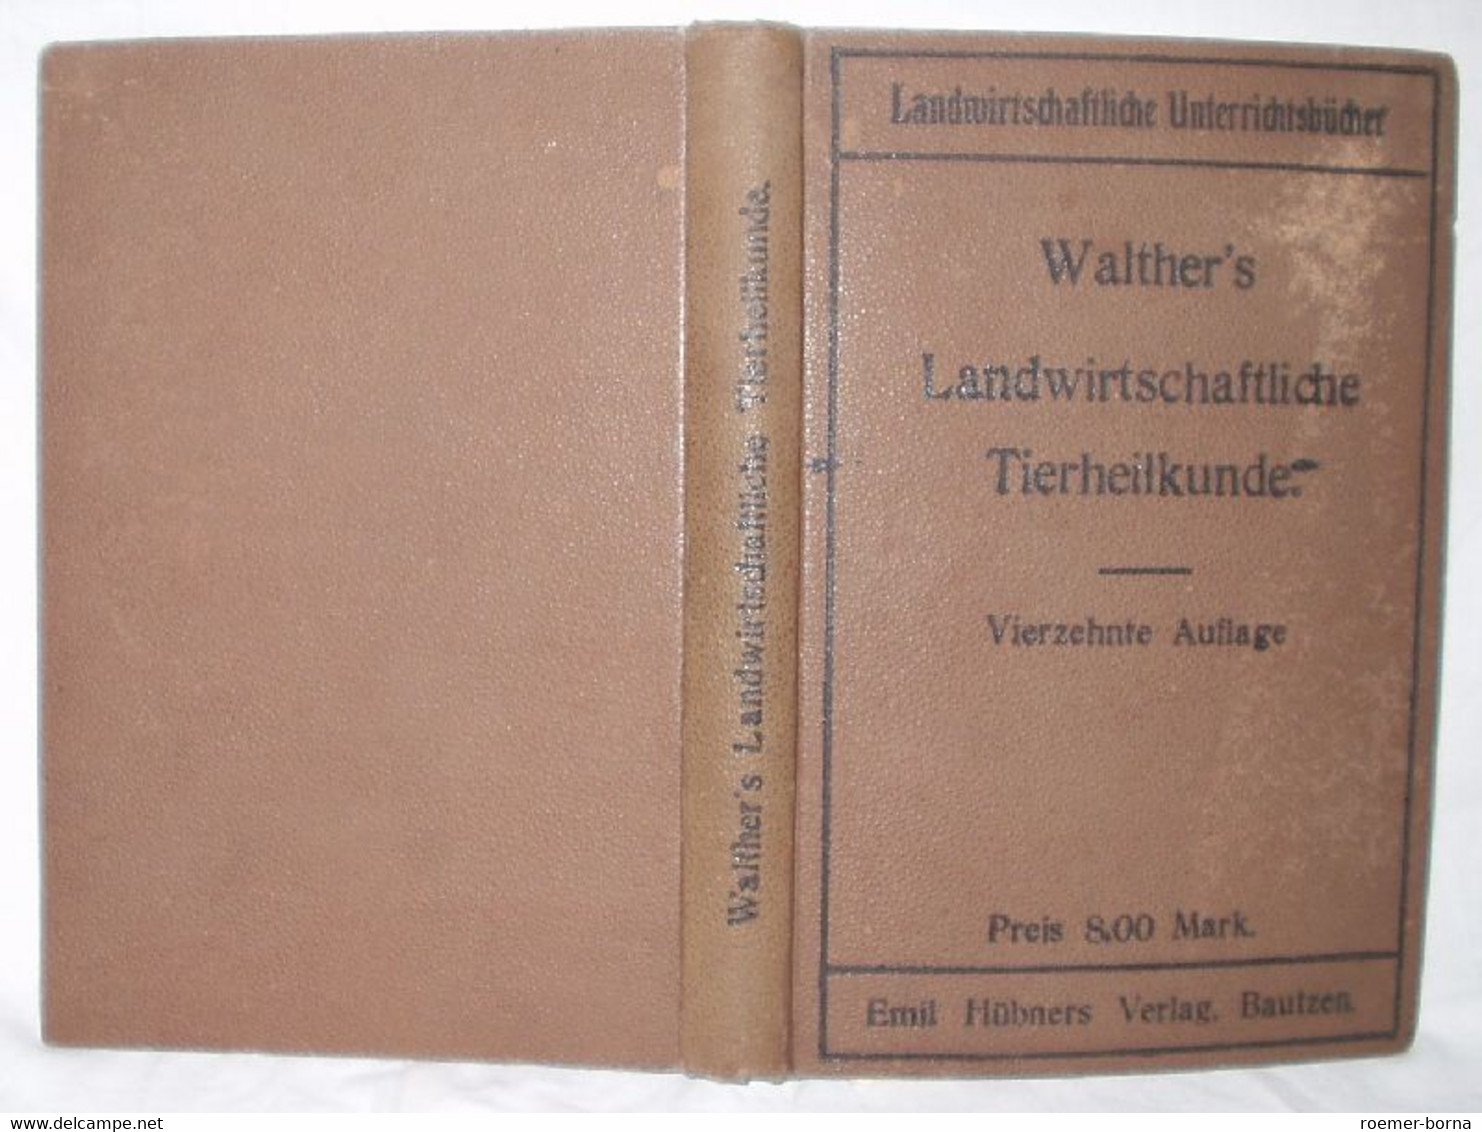 Walthers Landwirtschaftliche Tierheilkunde - Animals